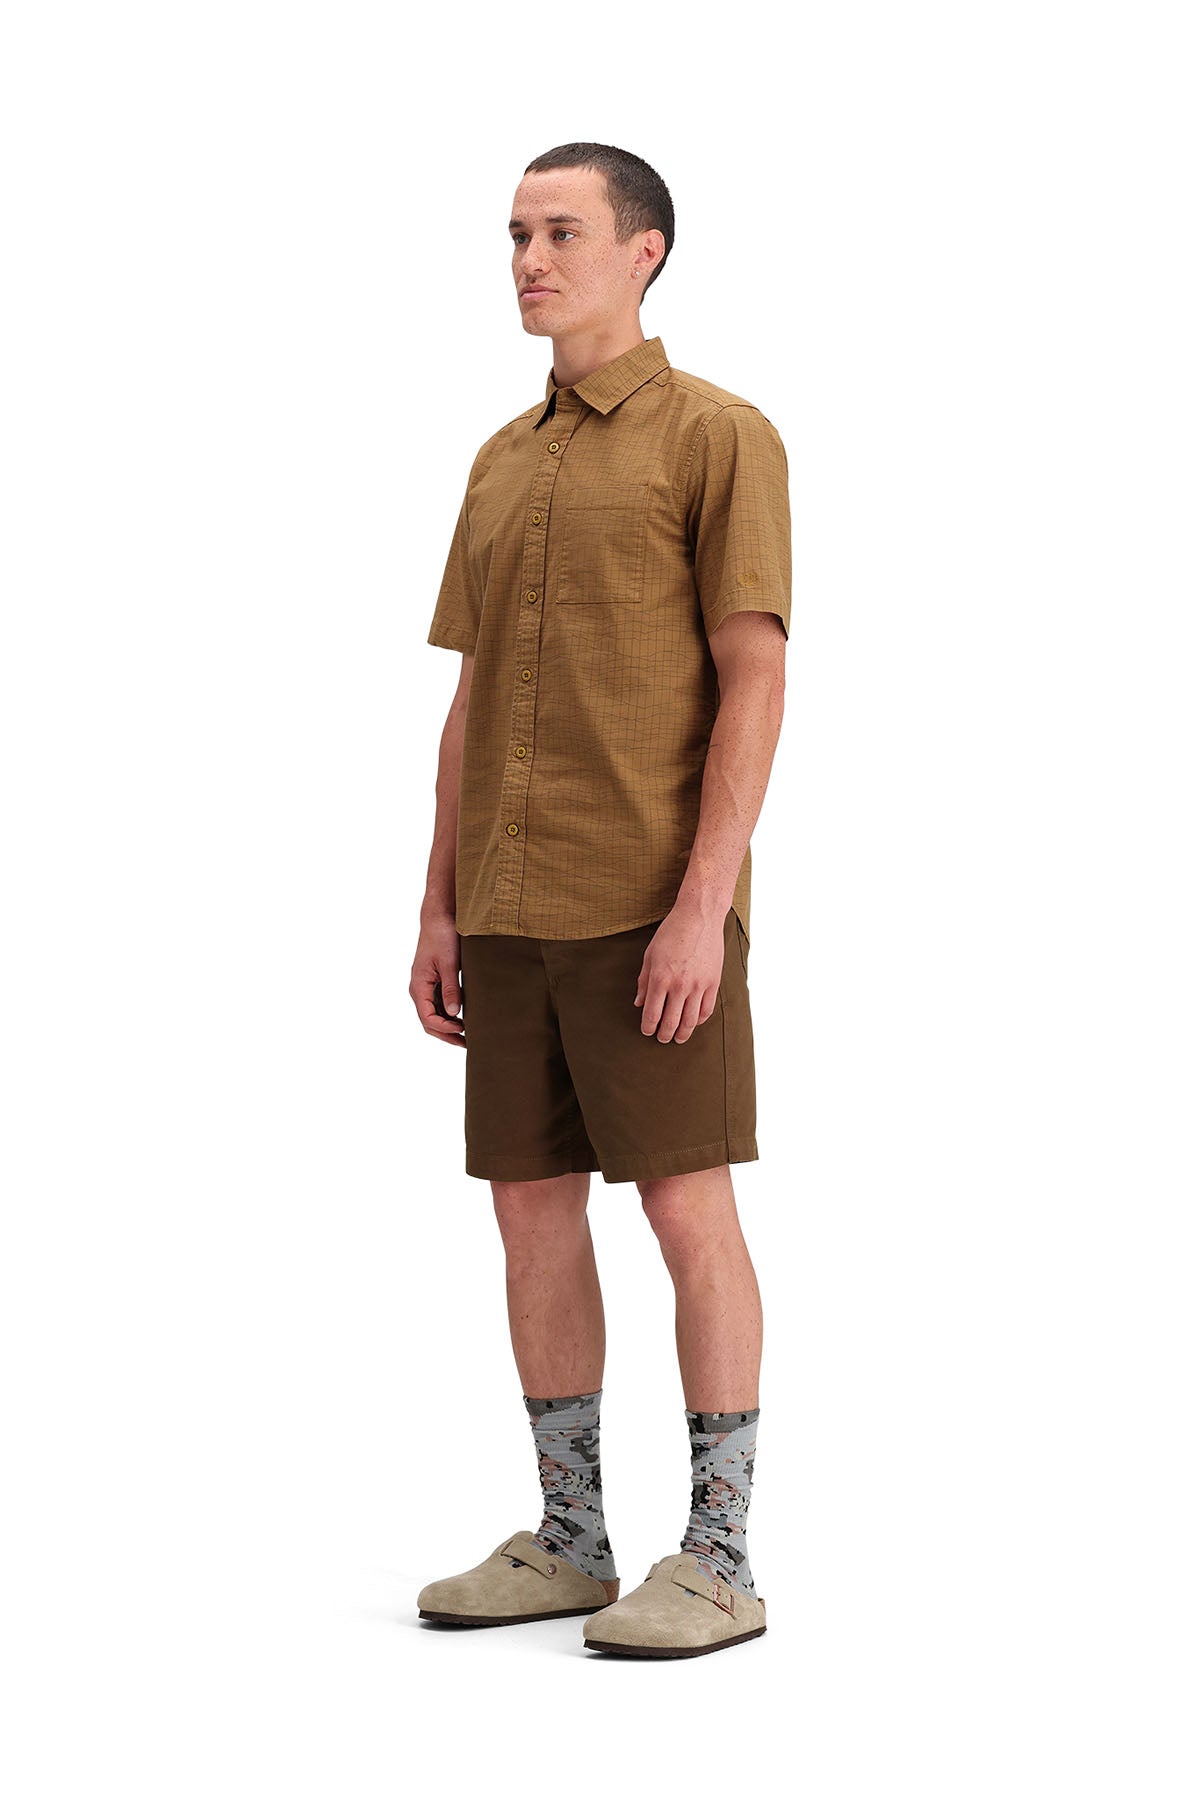 Topo Designs - Dirt Desert Shirt SS - Dark Khaki Terrain - Side